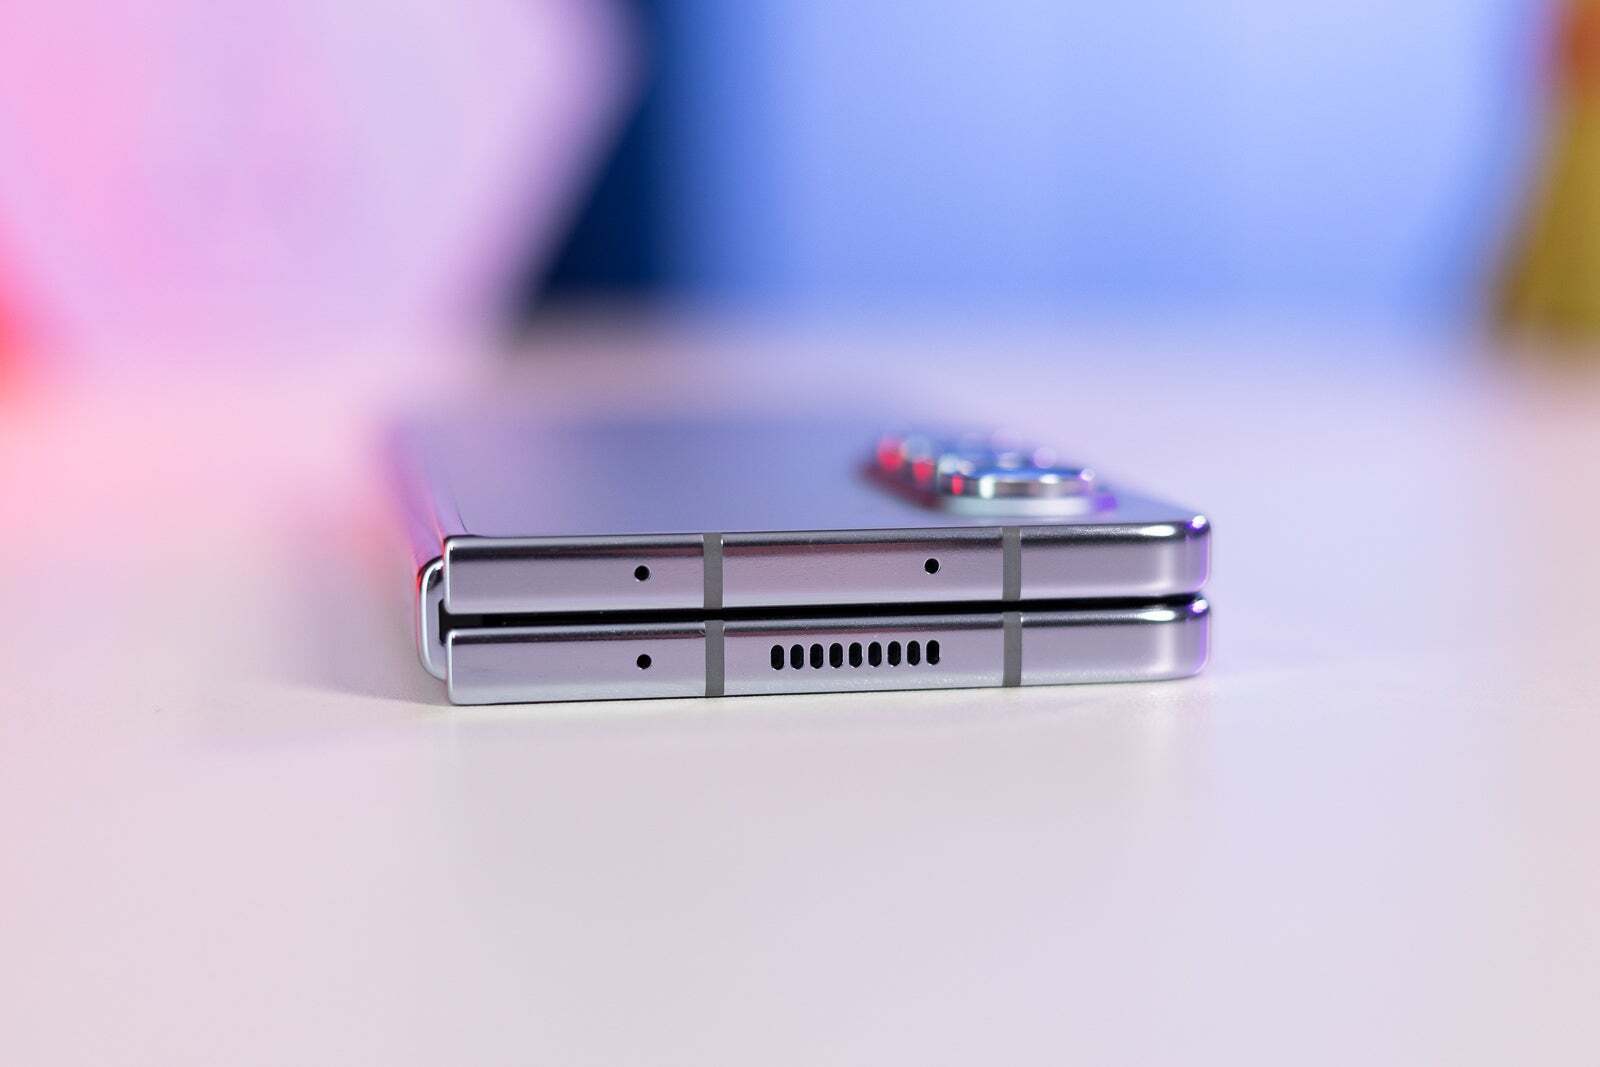 Dank der „dickeren“ Lösung von Samsung könnte die Falte auf dem faltbaren iPhone weniger sichtbar sein